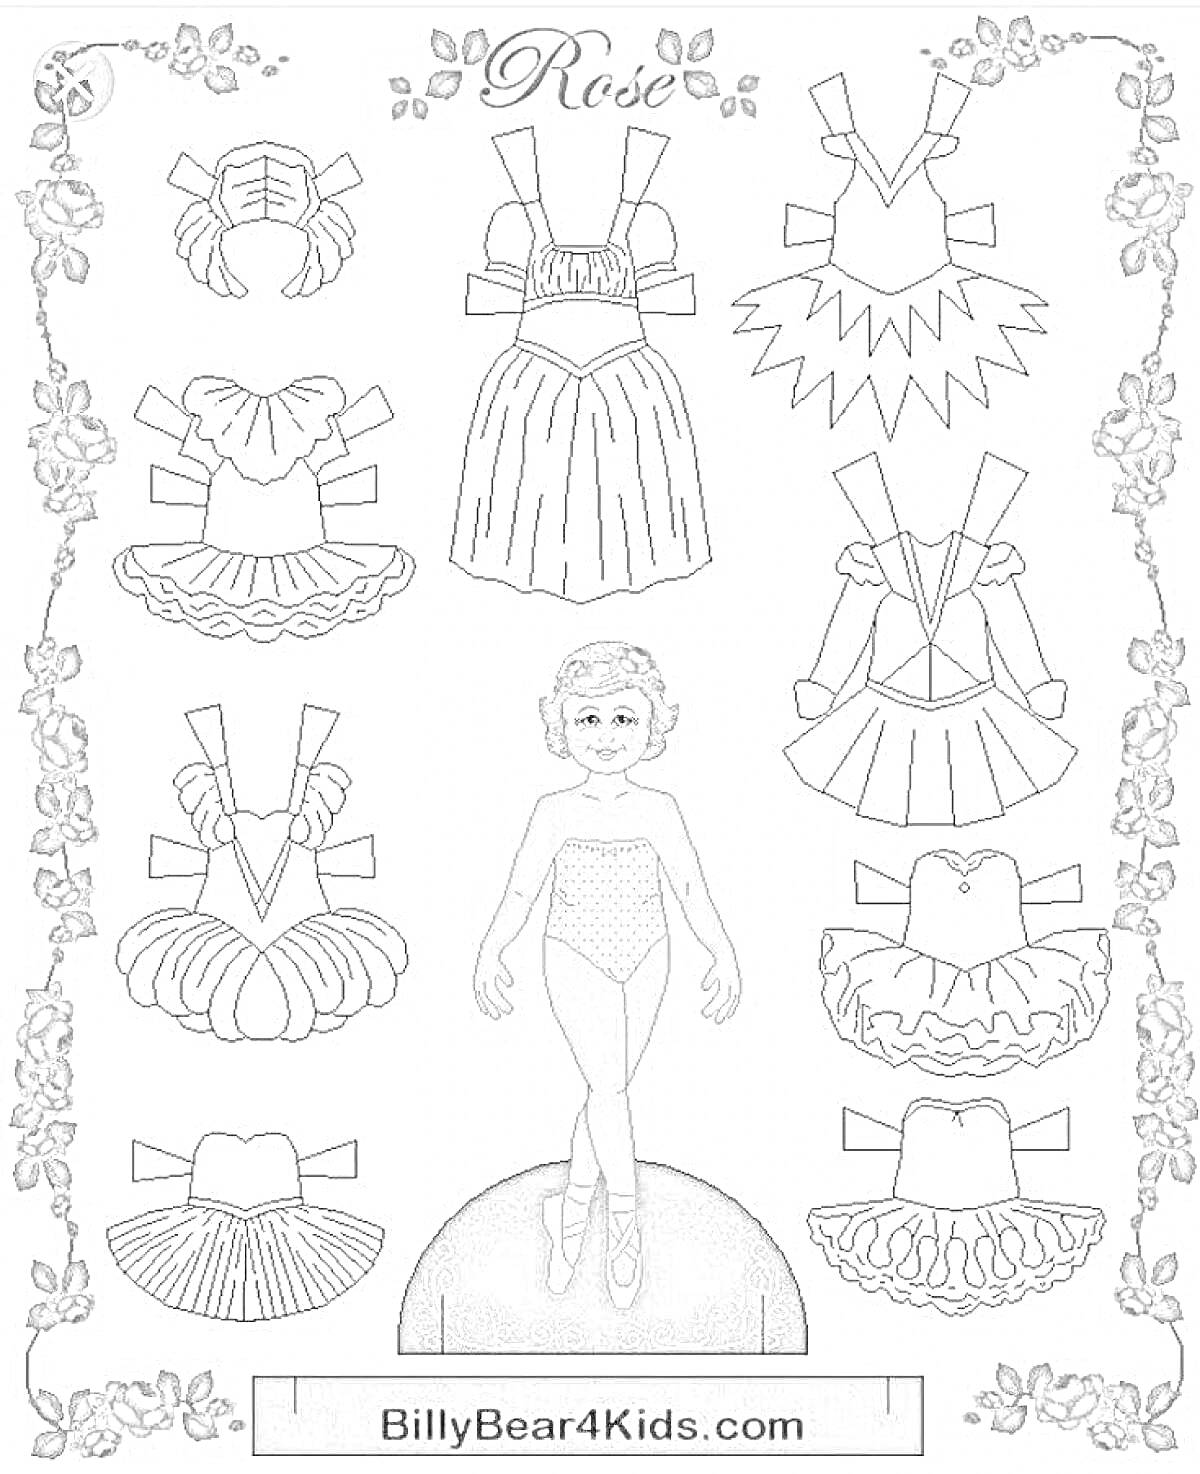 Раскраска Кукла с вырезанными платьями и нарядами балерины